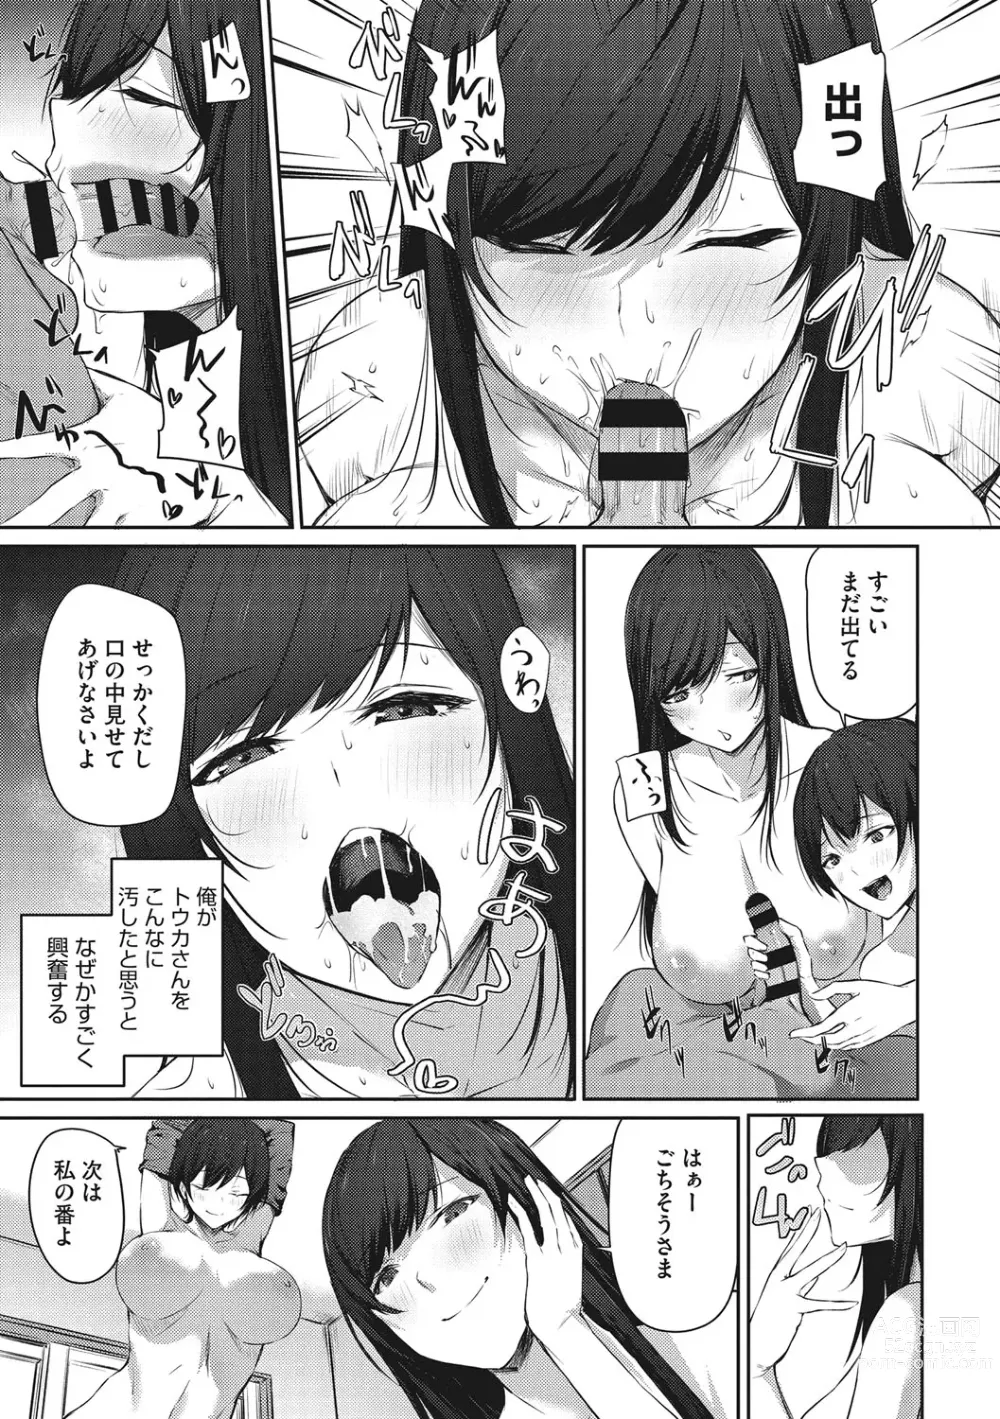 Page 12 of manga Karada Awase